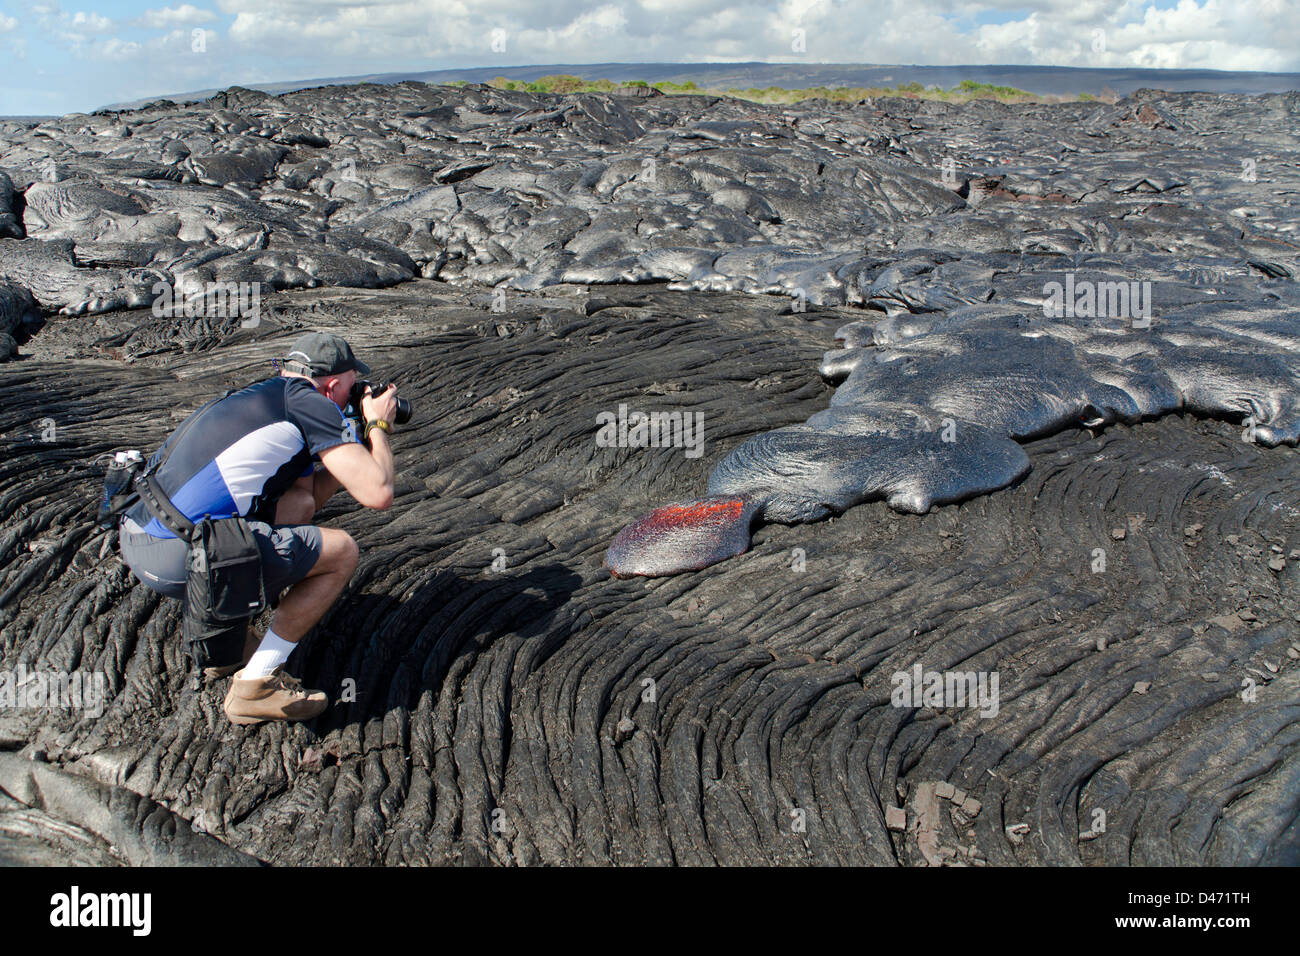 Un photographe (MR) le tournage d'un nouveau déménagement, lente, Pahoehoe lava flow de Kilauea, Big Island, Hawaii. Banque D'Images